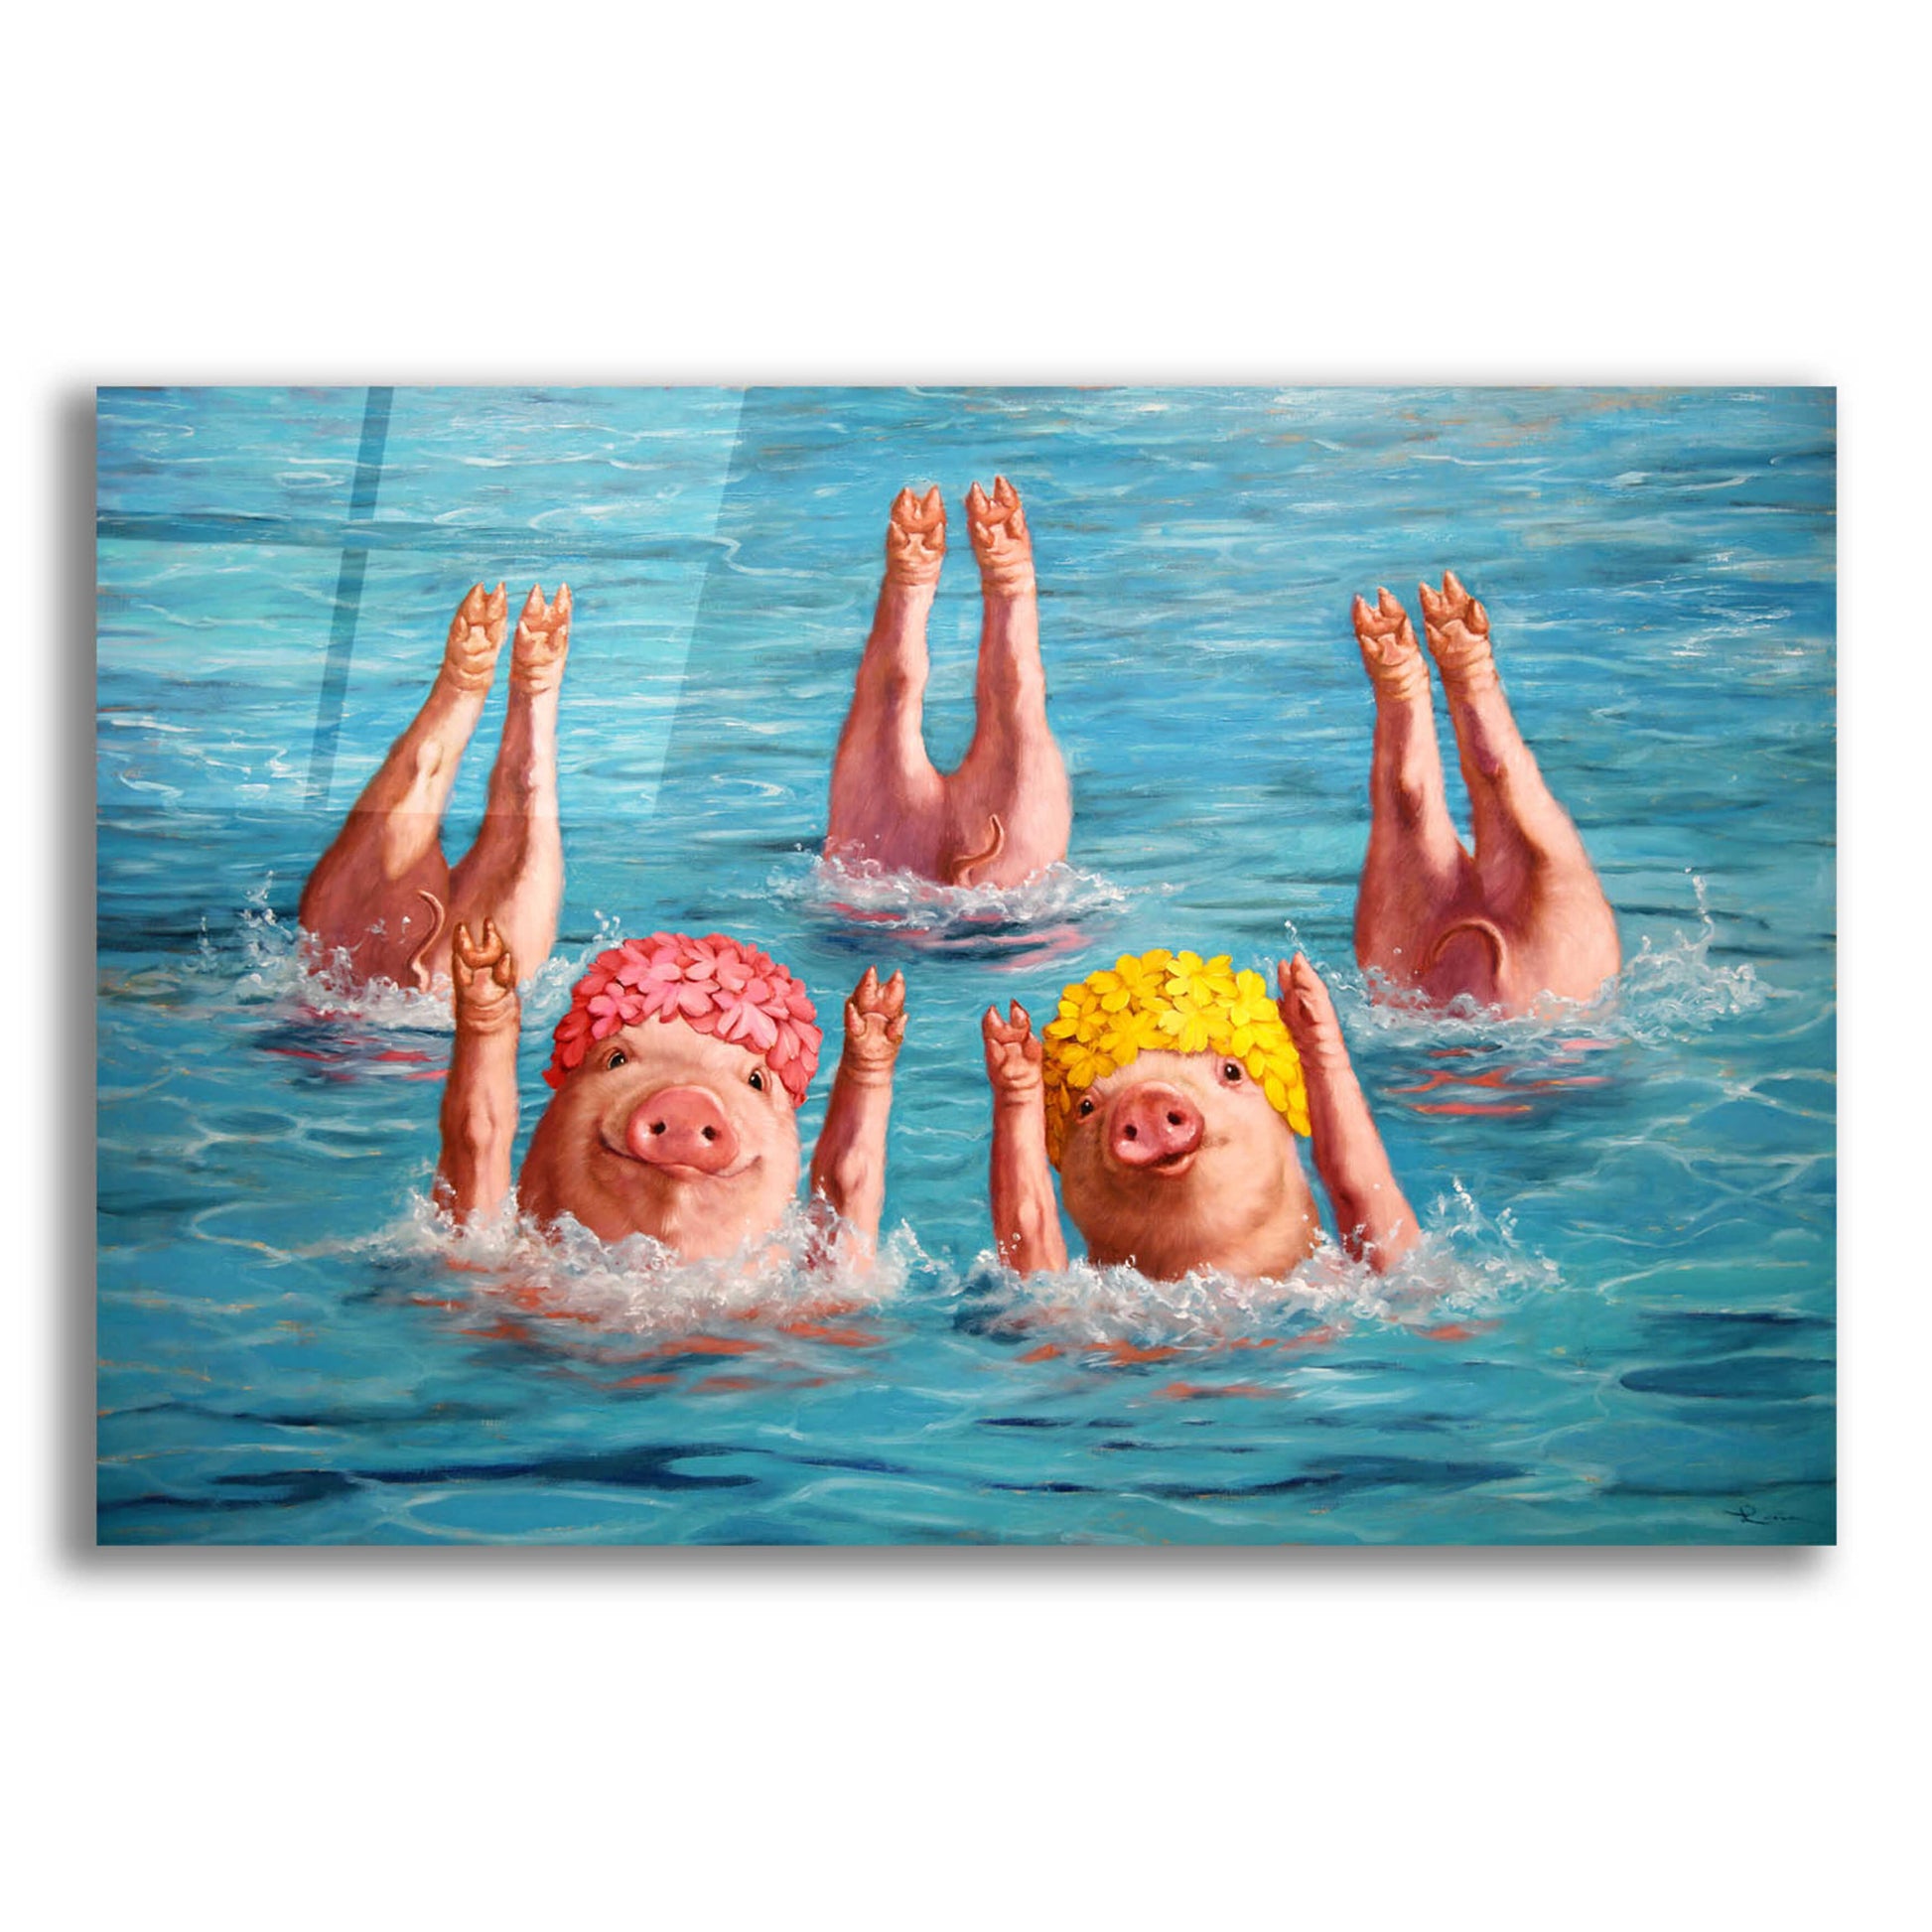 Epic Art 'Water Ballet' by Lucia Heffernan,24x16